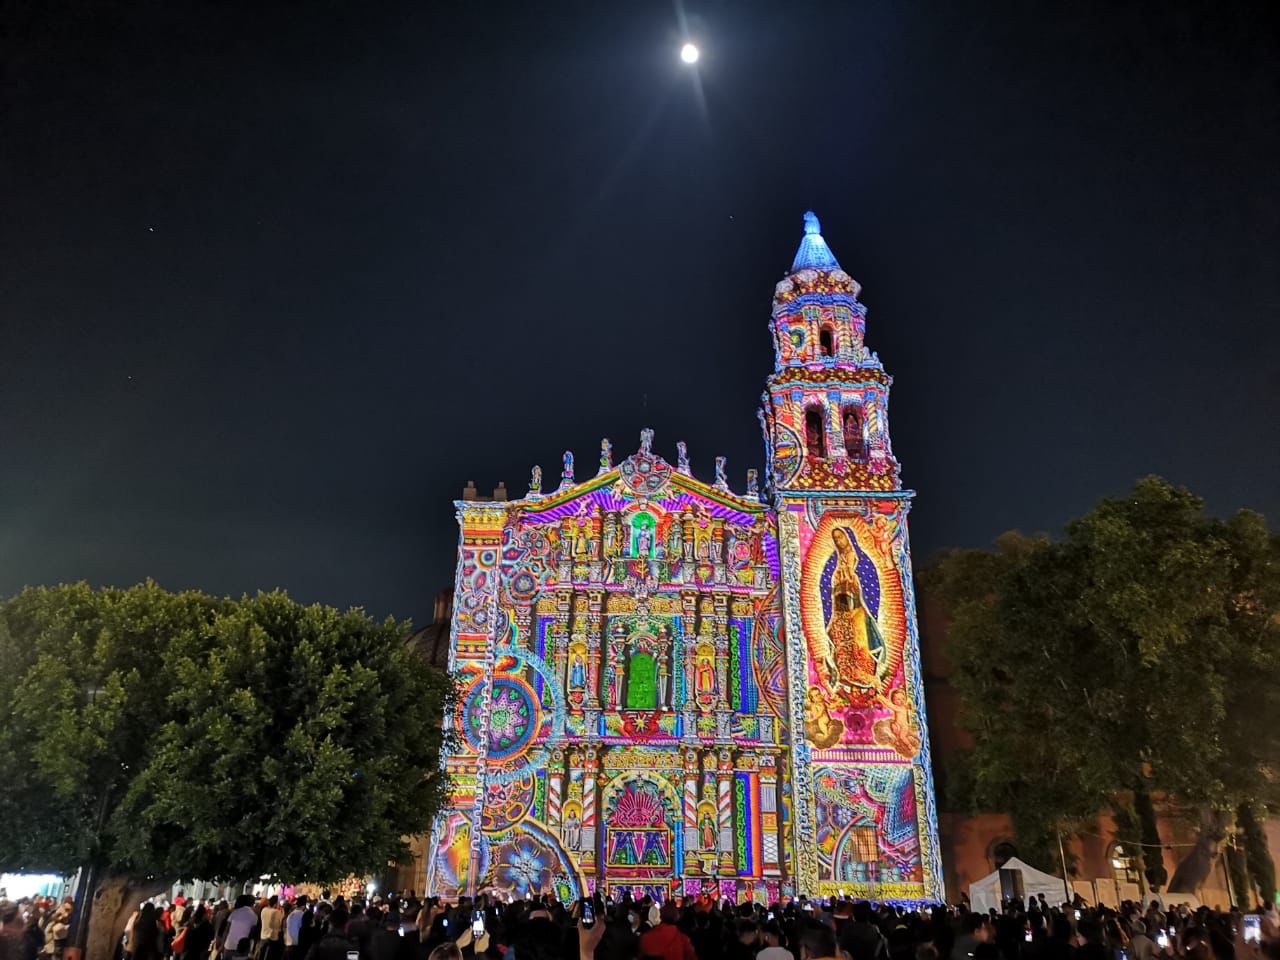 Inicia “Carmeligth 2.0” en Plaza del Carmen, con fusión de luces y sonidos